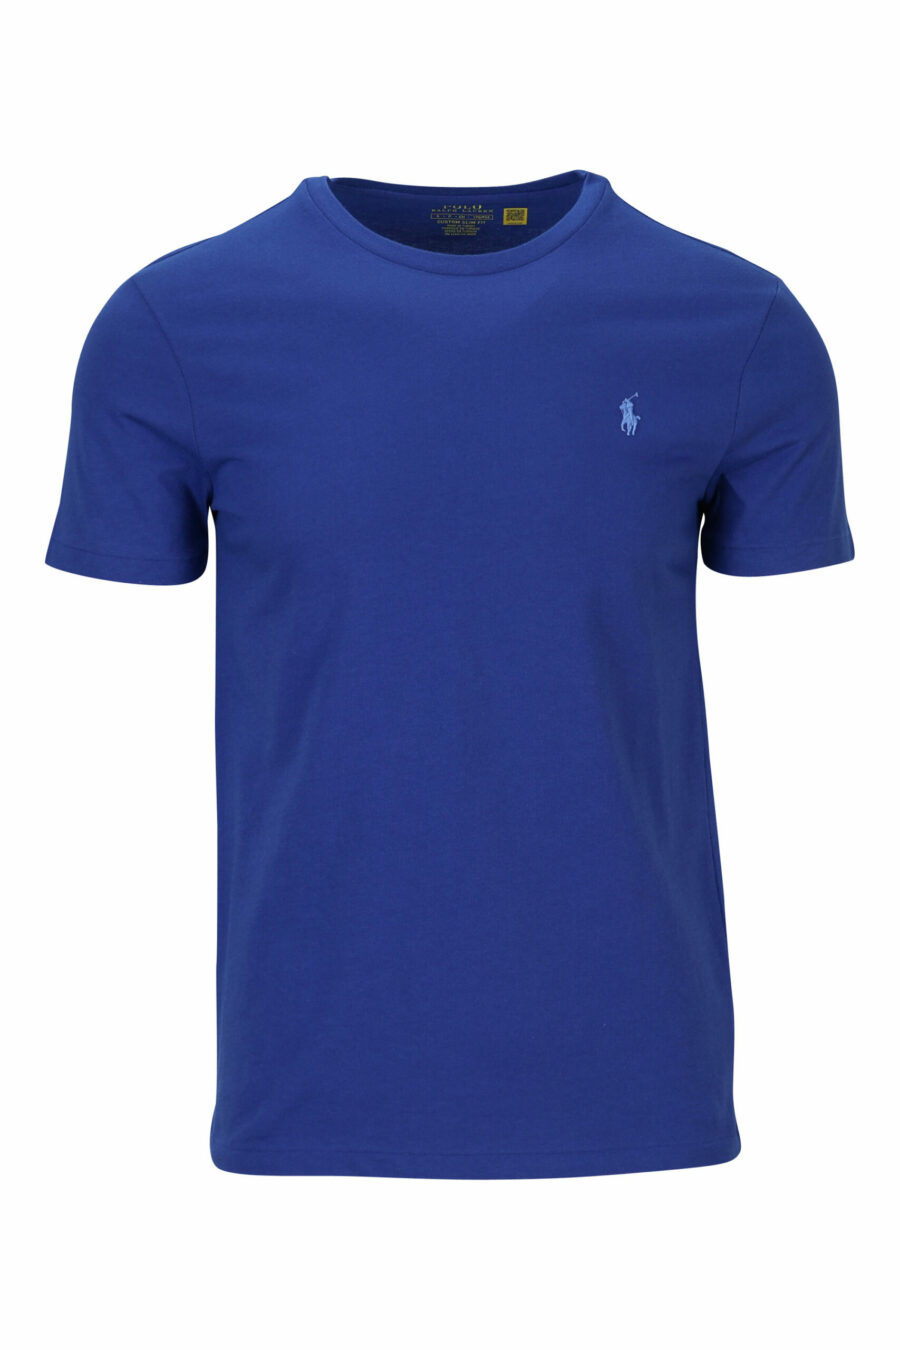 Camiseta azul con minilogo "polo" - 3616535835214 scaled